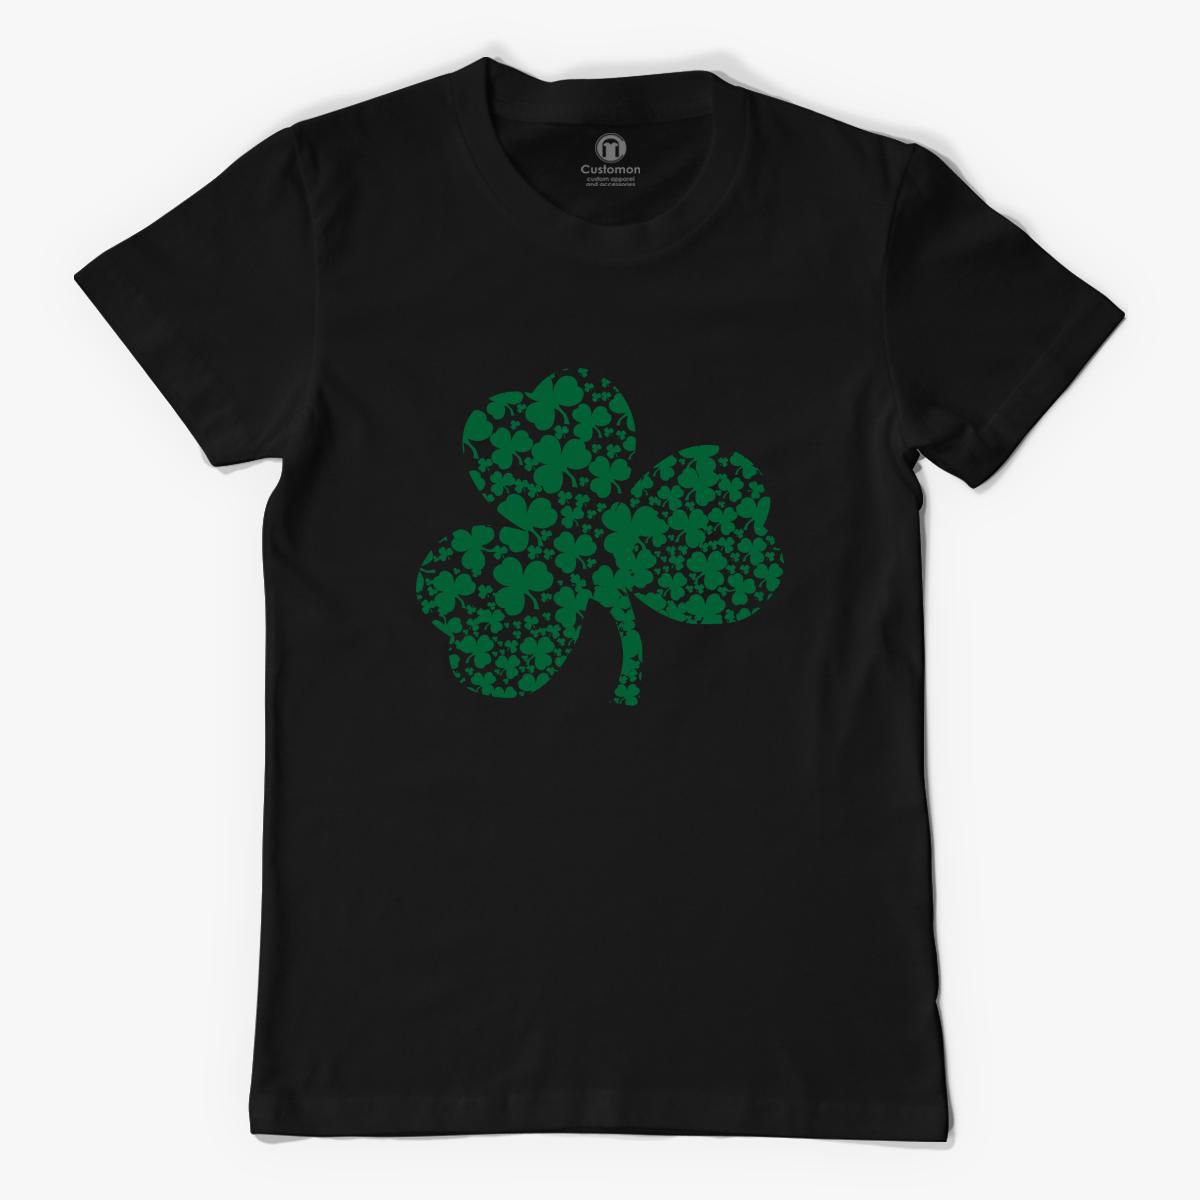 Green Shamrock Men's T-shirt - Customon